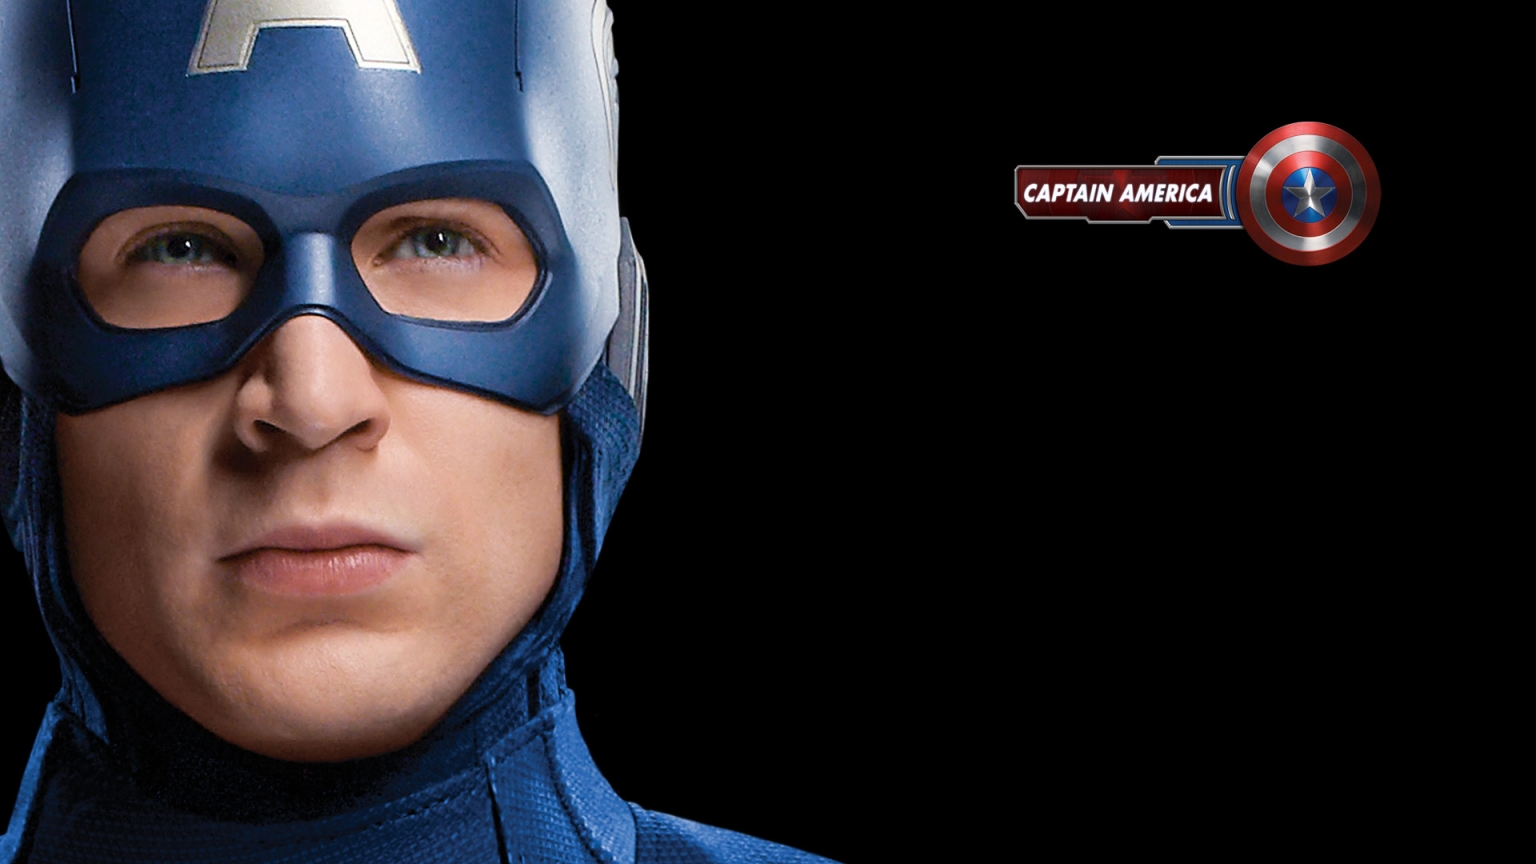 The Avengers Captain America for 1536 x 864 HDTV resolution